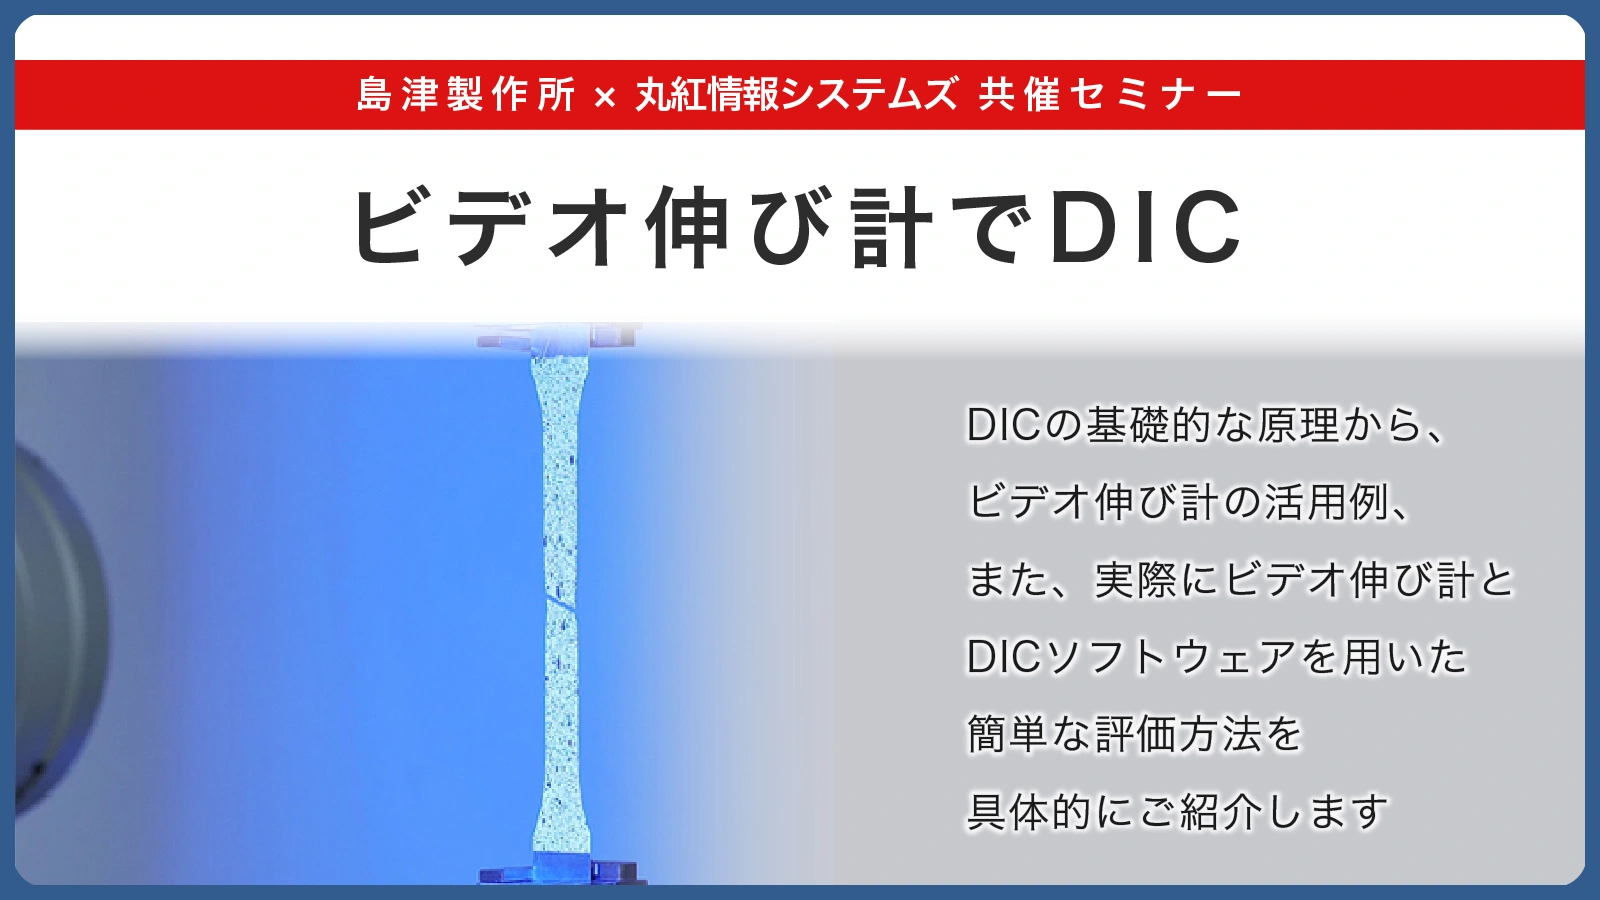 島津製作所・丸紅情報システムズ共催ウェビナー ビデオ伸び計でDIC